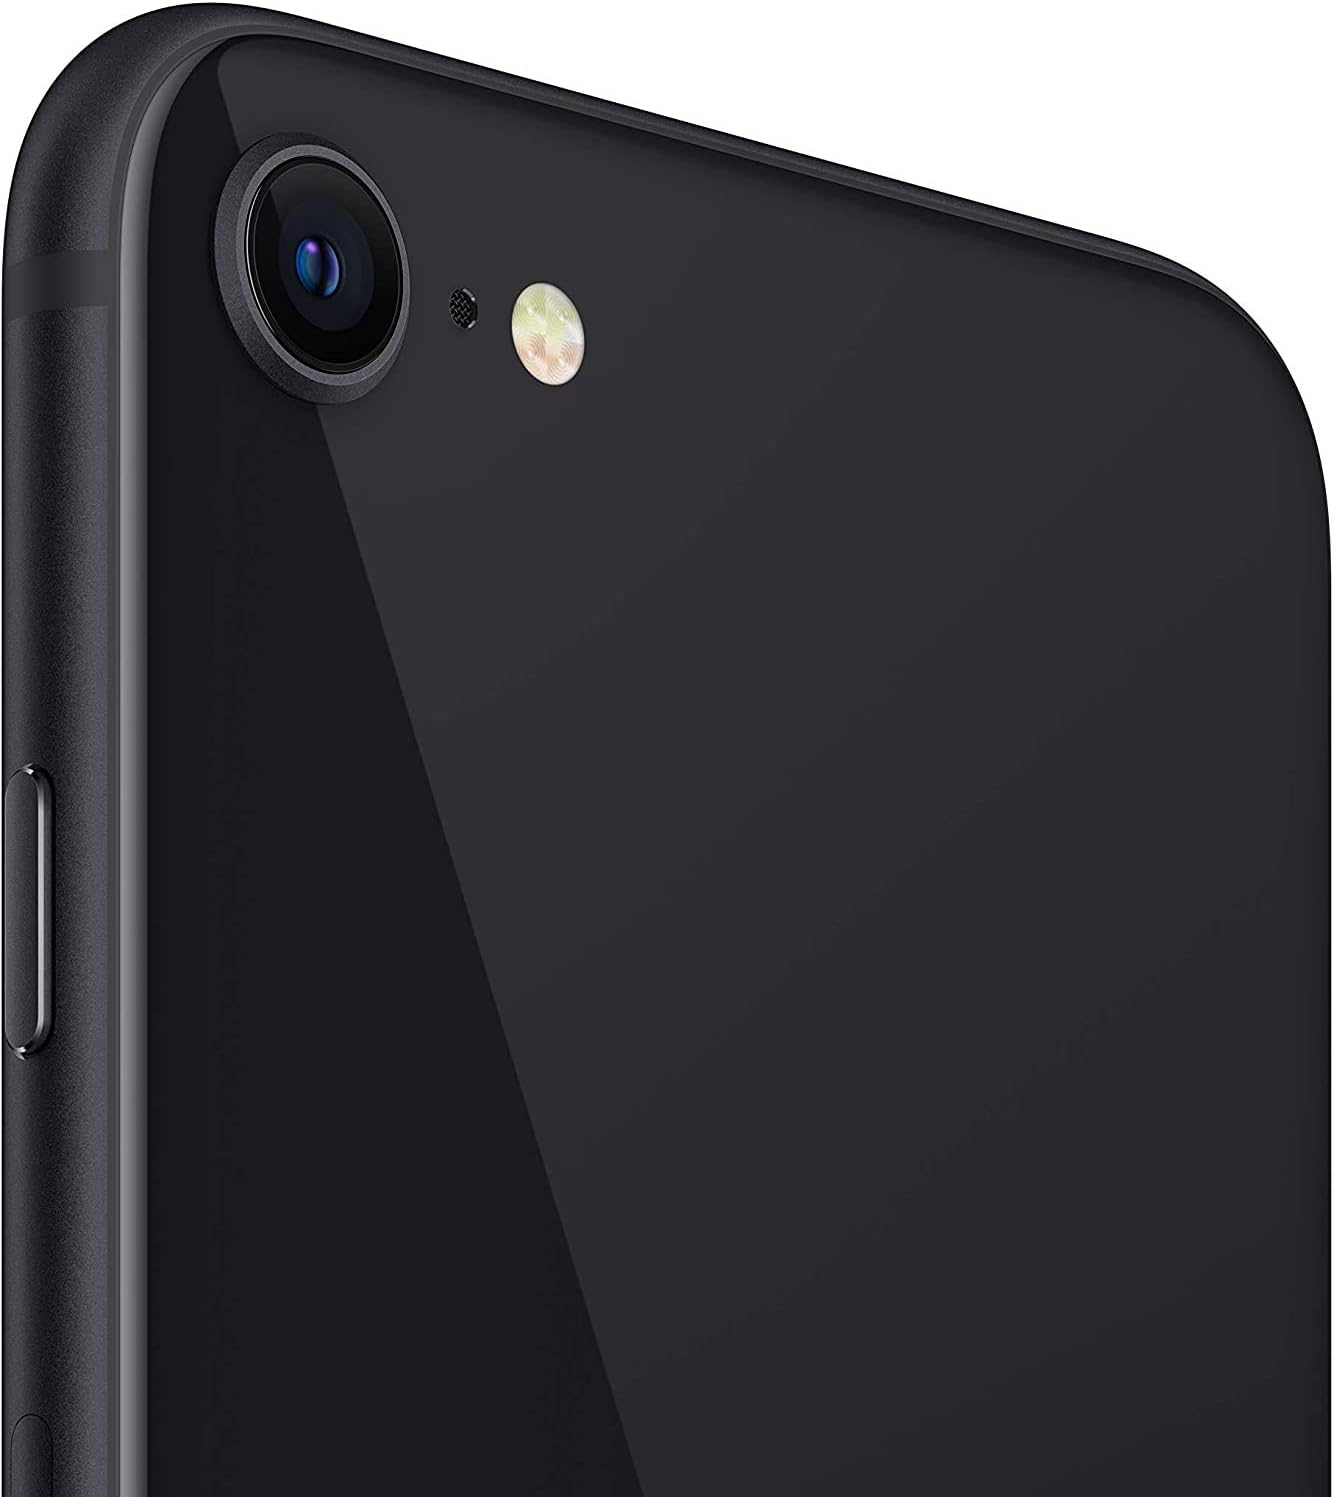 Apple iPhone SE (2nd generation) 128GB (Unlocked) - Black (Used)